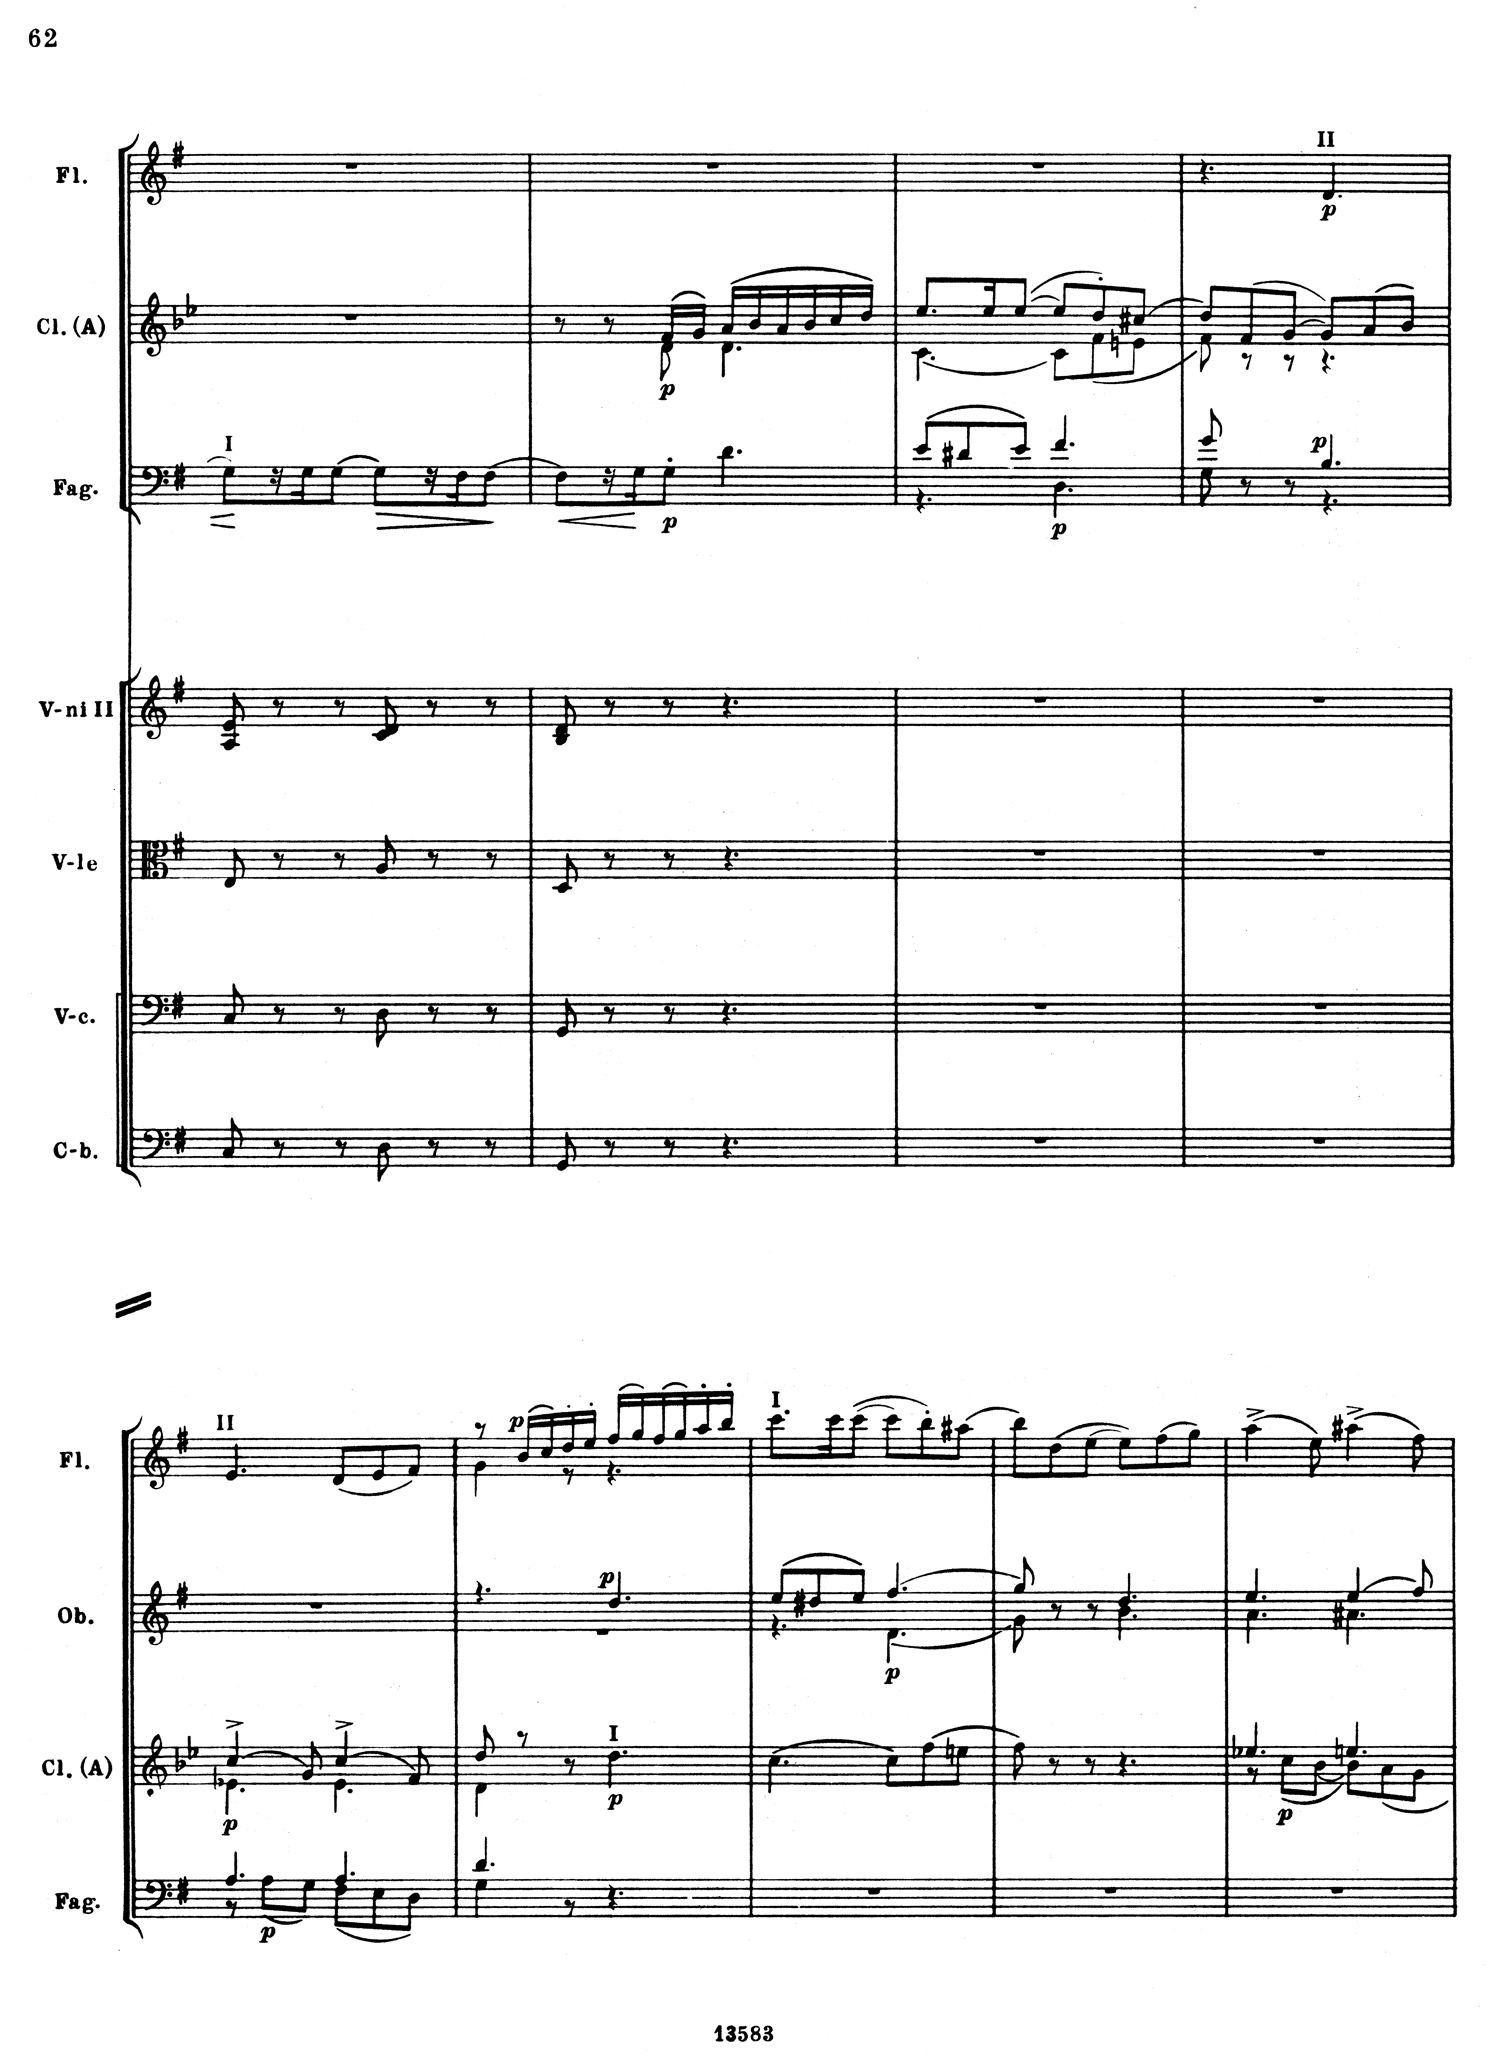 Tchaikovsky 5 Mvt 1 Score 2.jpg